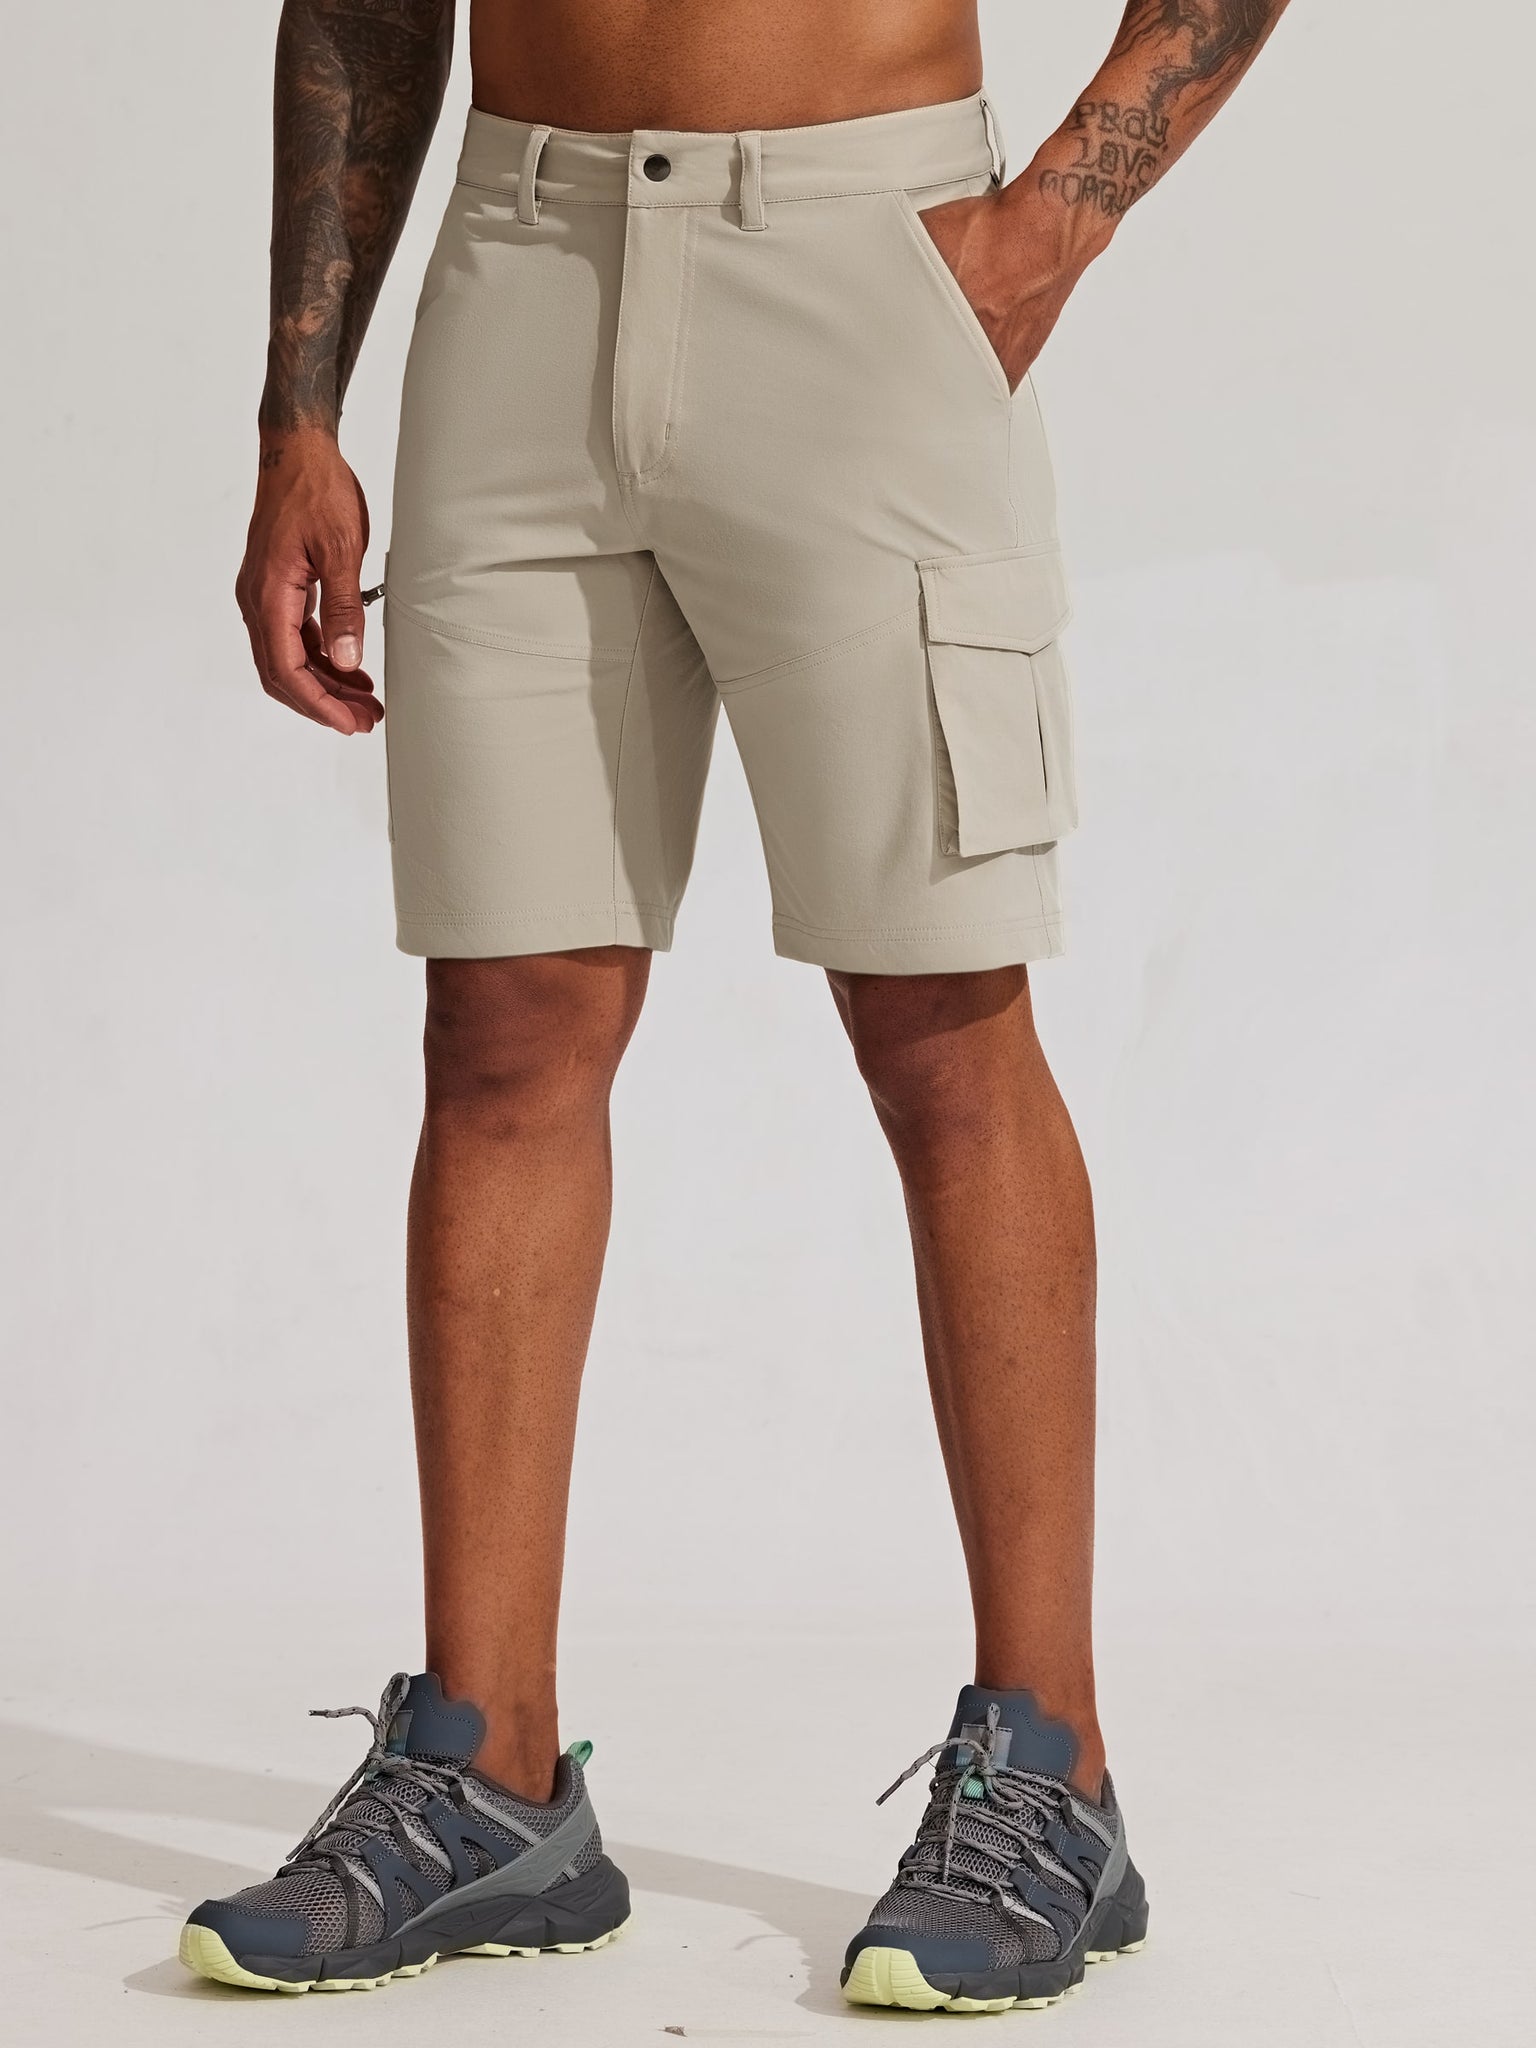 Men's Stretch Cargo Shorts 9 Inch_Khaki4